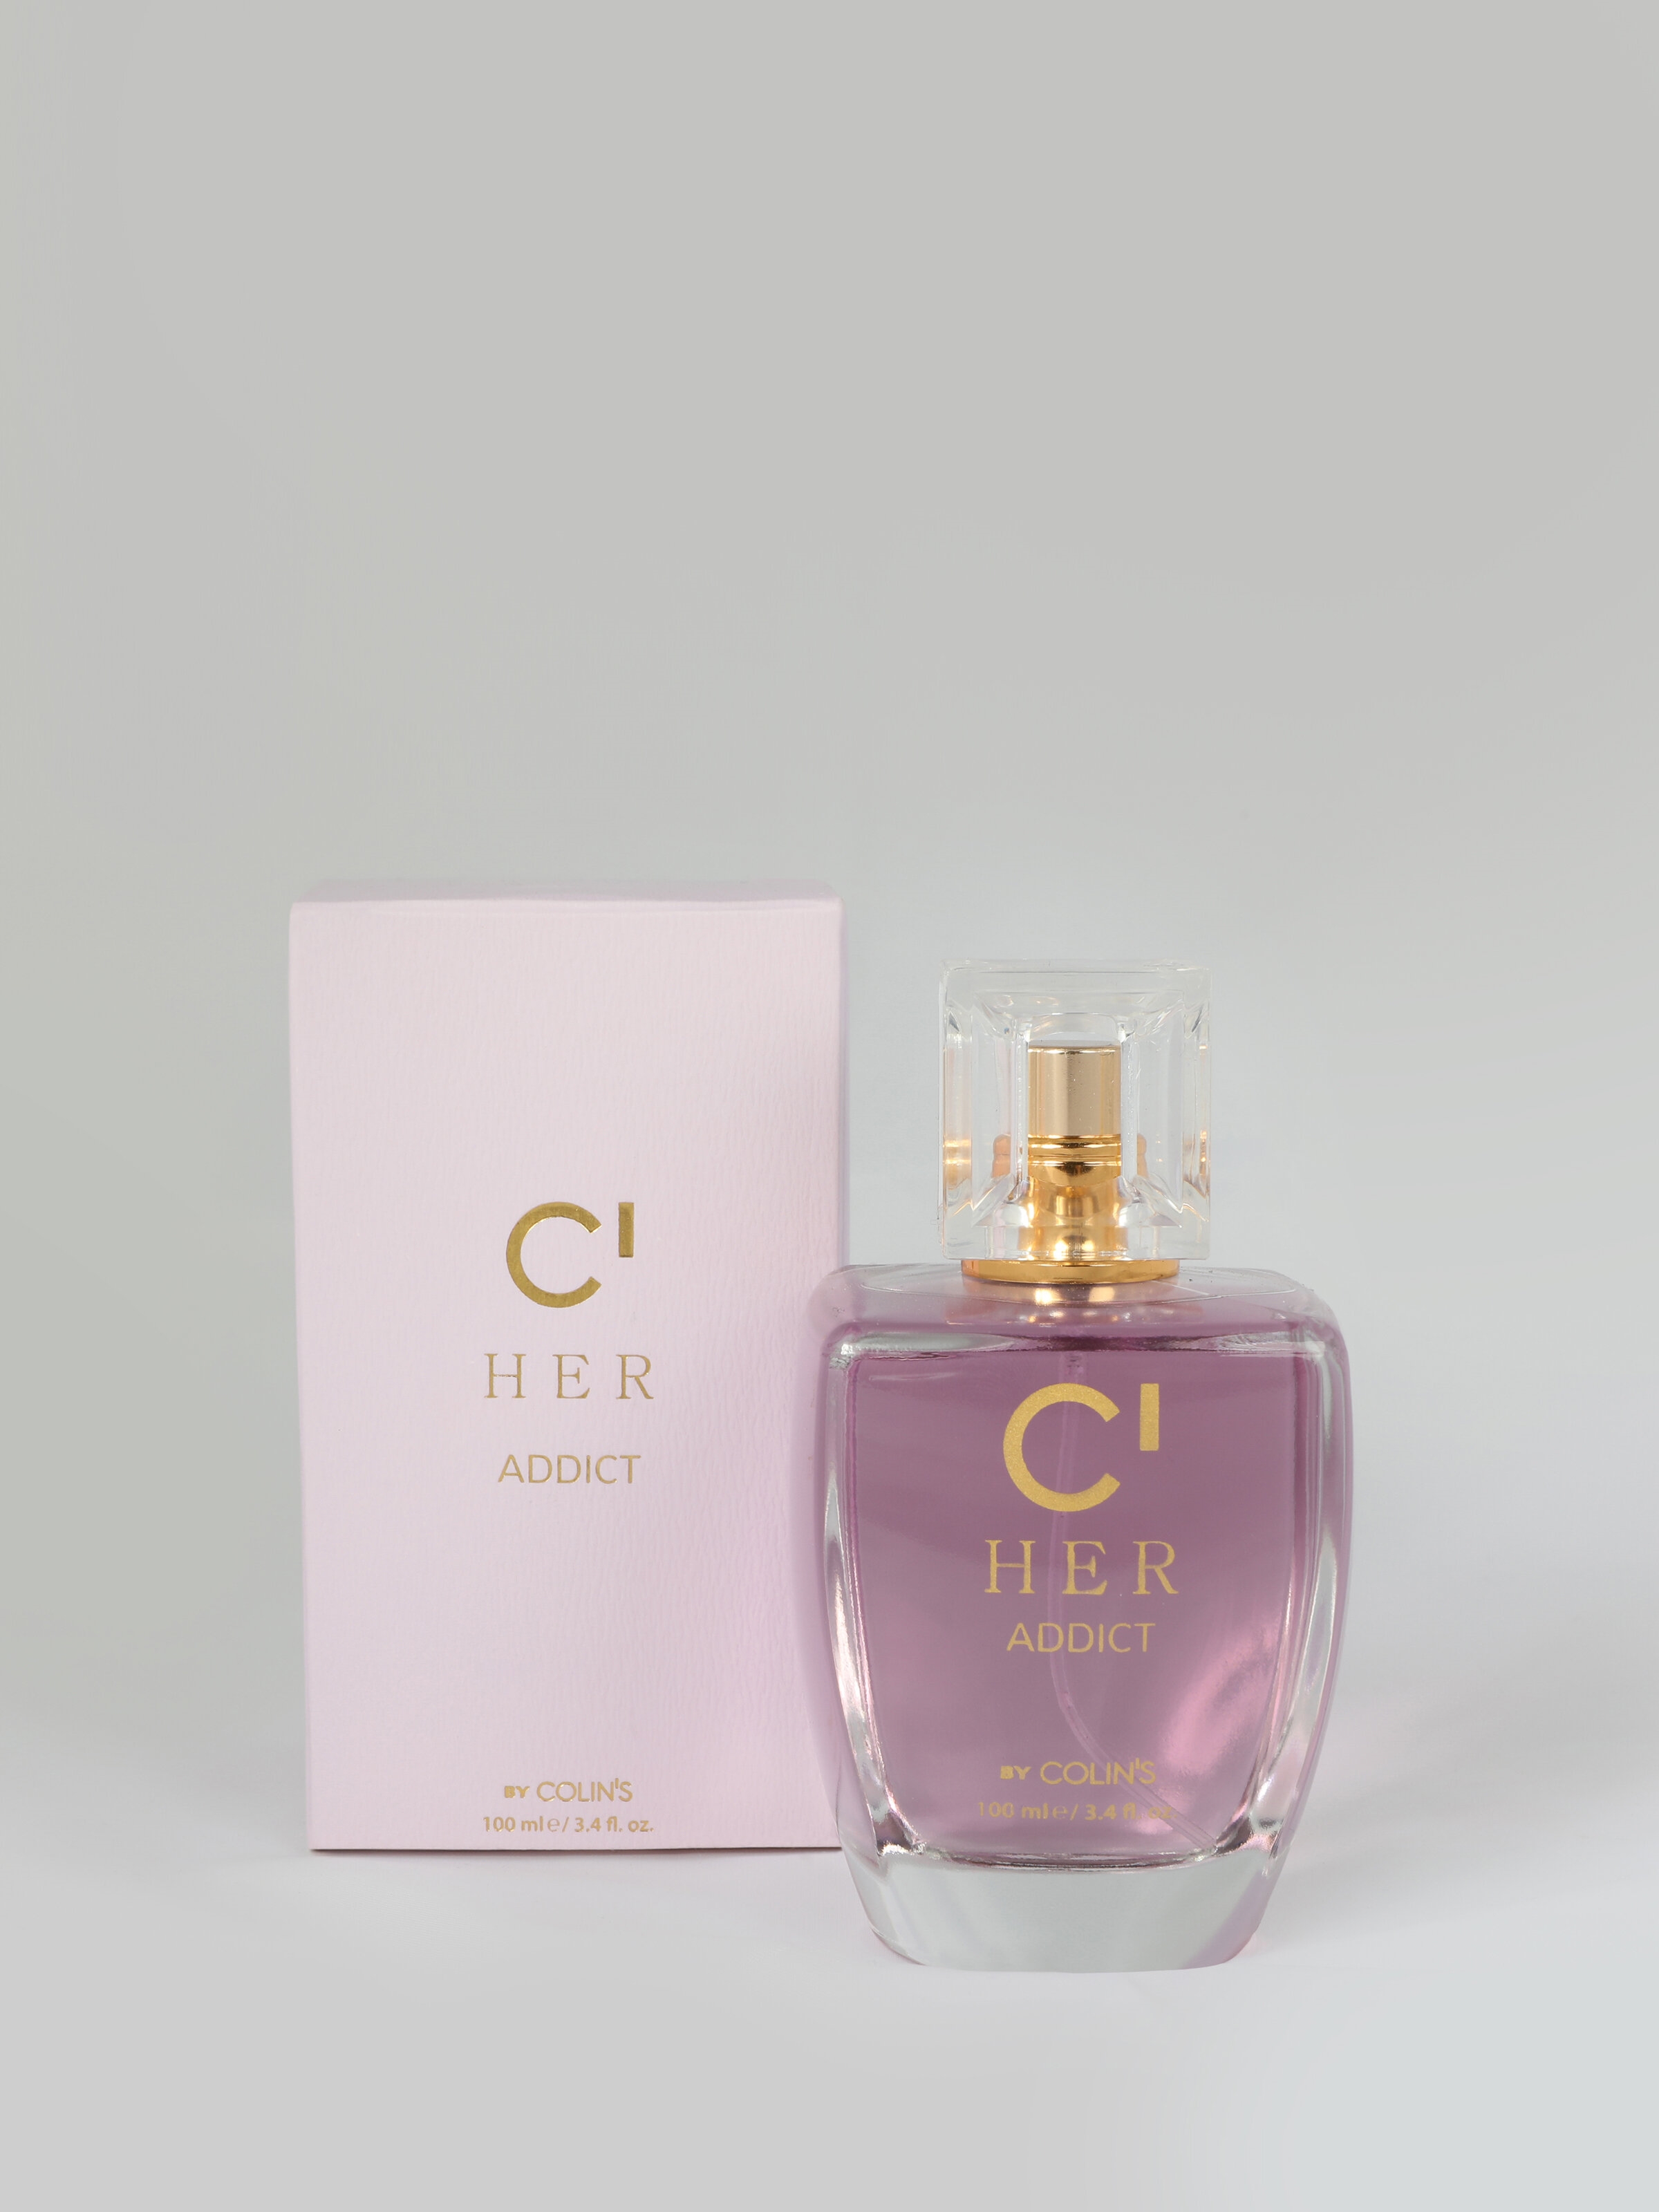 C Her – Addıct Çiçeksi Hafif Baharatlı Kadın Parfüm Cl1063544